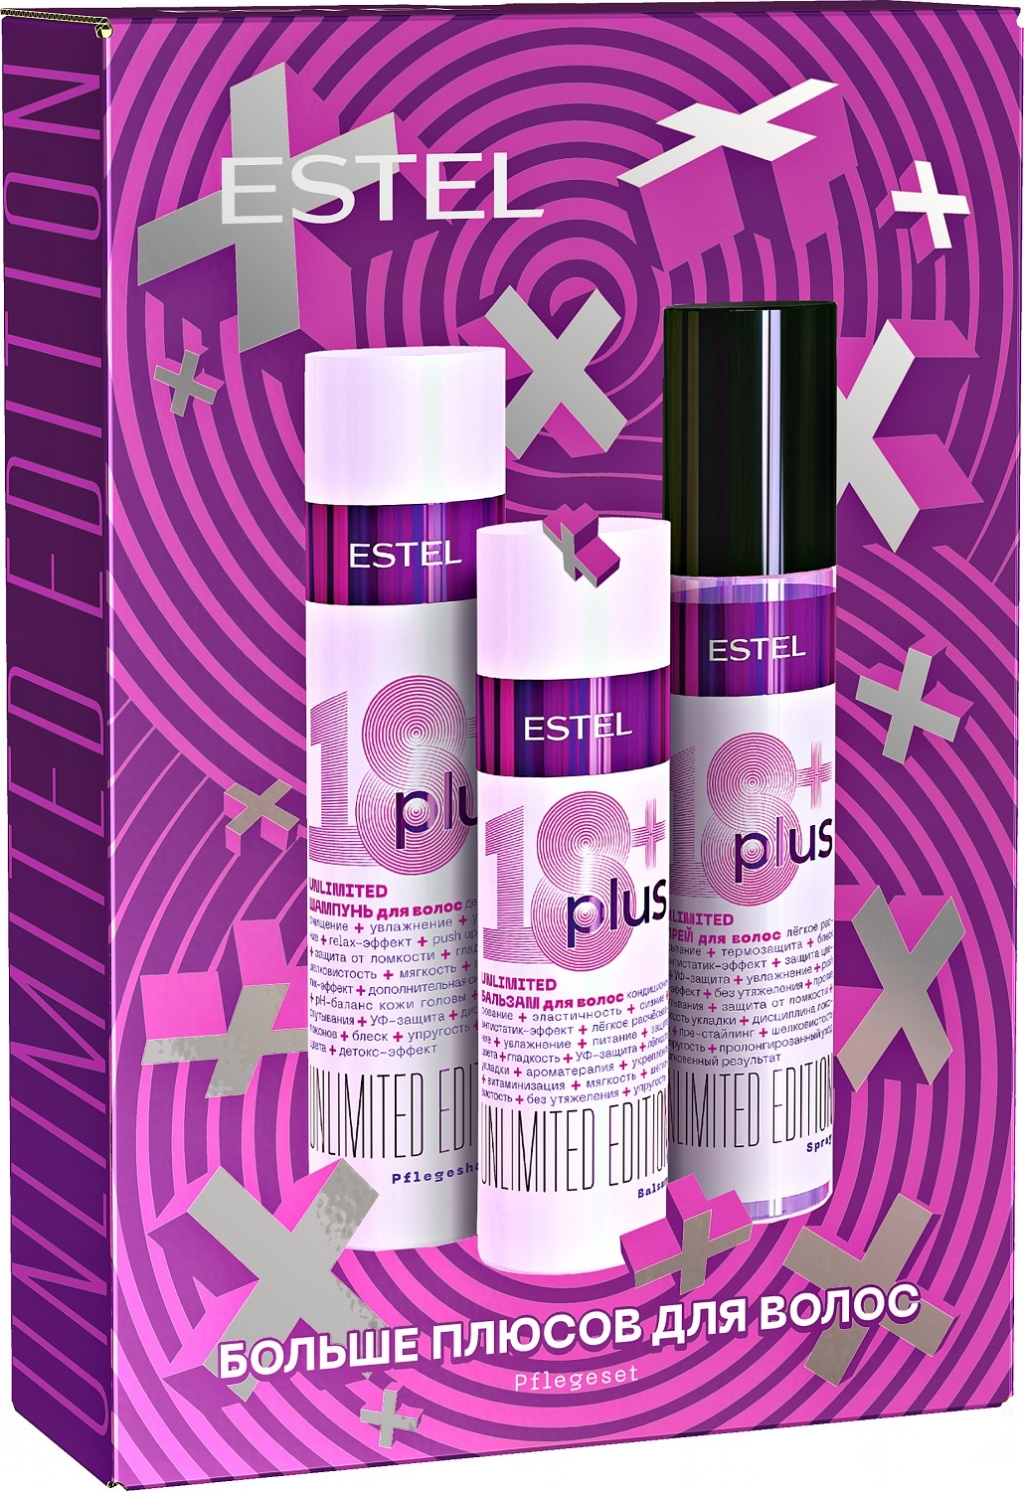 Купить Estel Professional Набор Шампунь для волос 250 мл + Бальзам для волос 200 мл + Спрей для волос 200 мл (Estel Professional, 18 Plus)